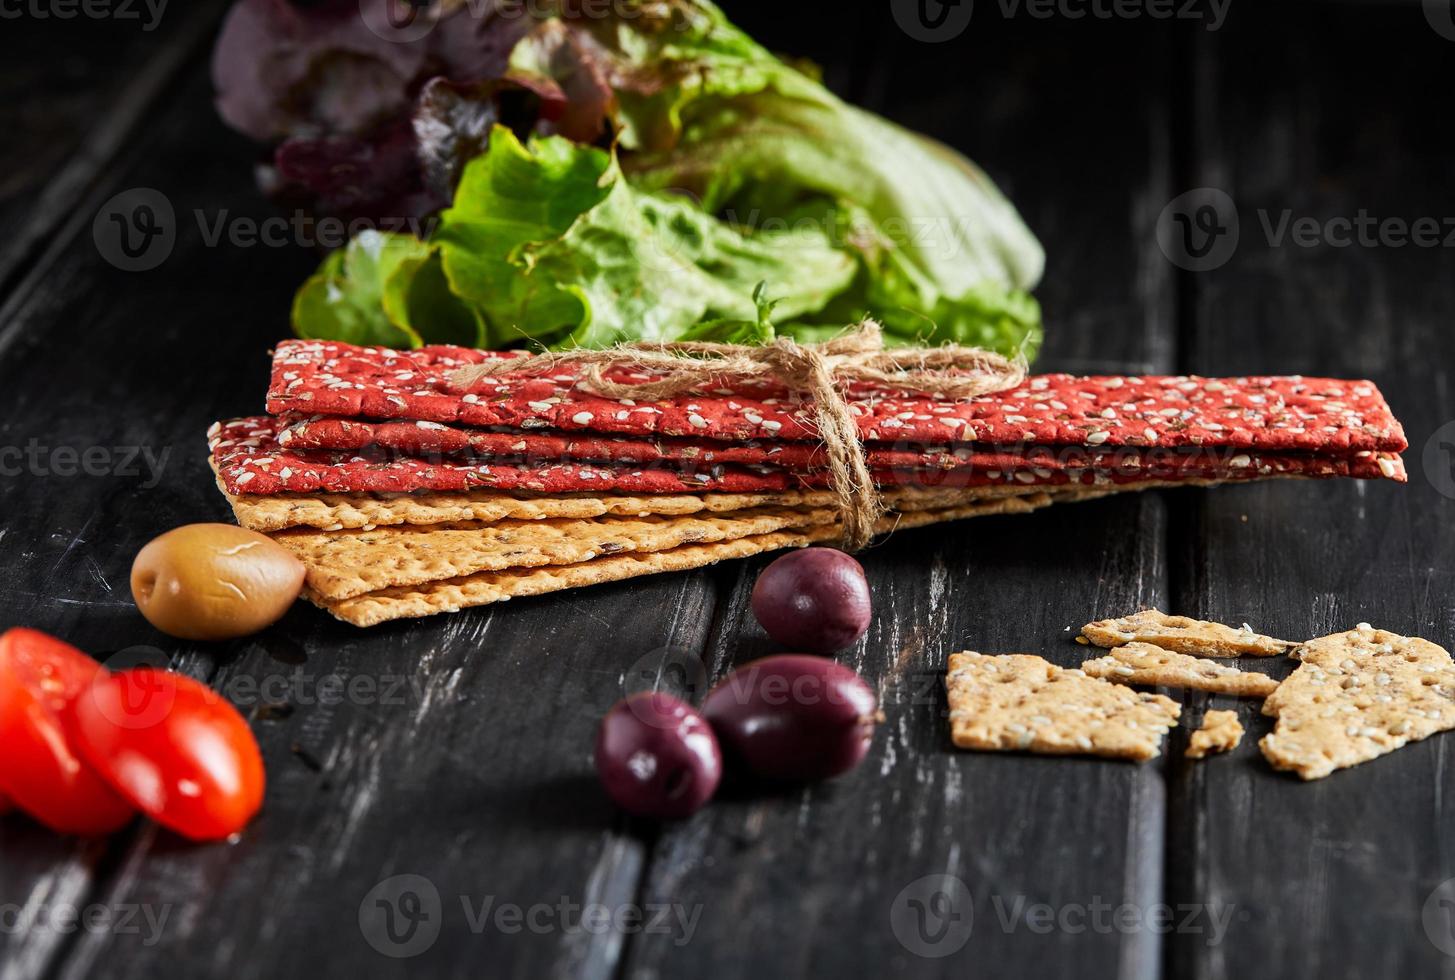 Bieten- en roggebloemcrackers met groenten voor het maken van snacks foto